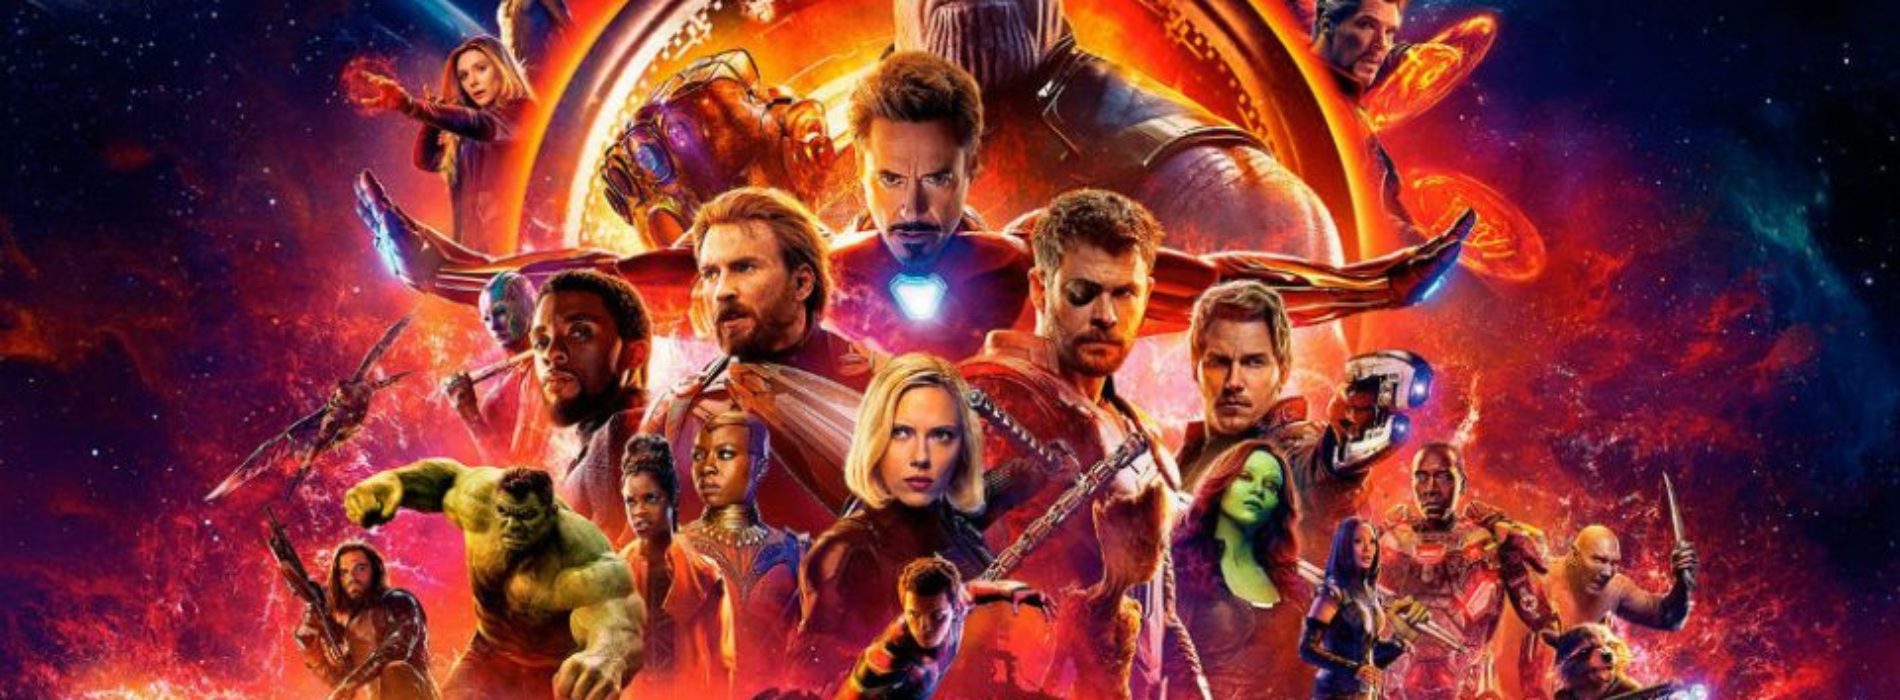 Que comience la guerra: Avengers domina la cartelera del fin
de semana